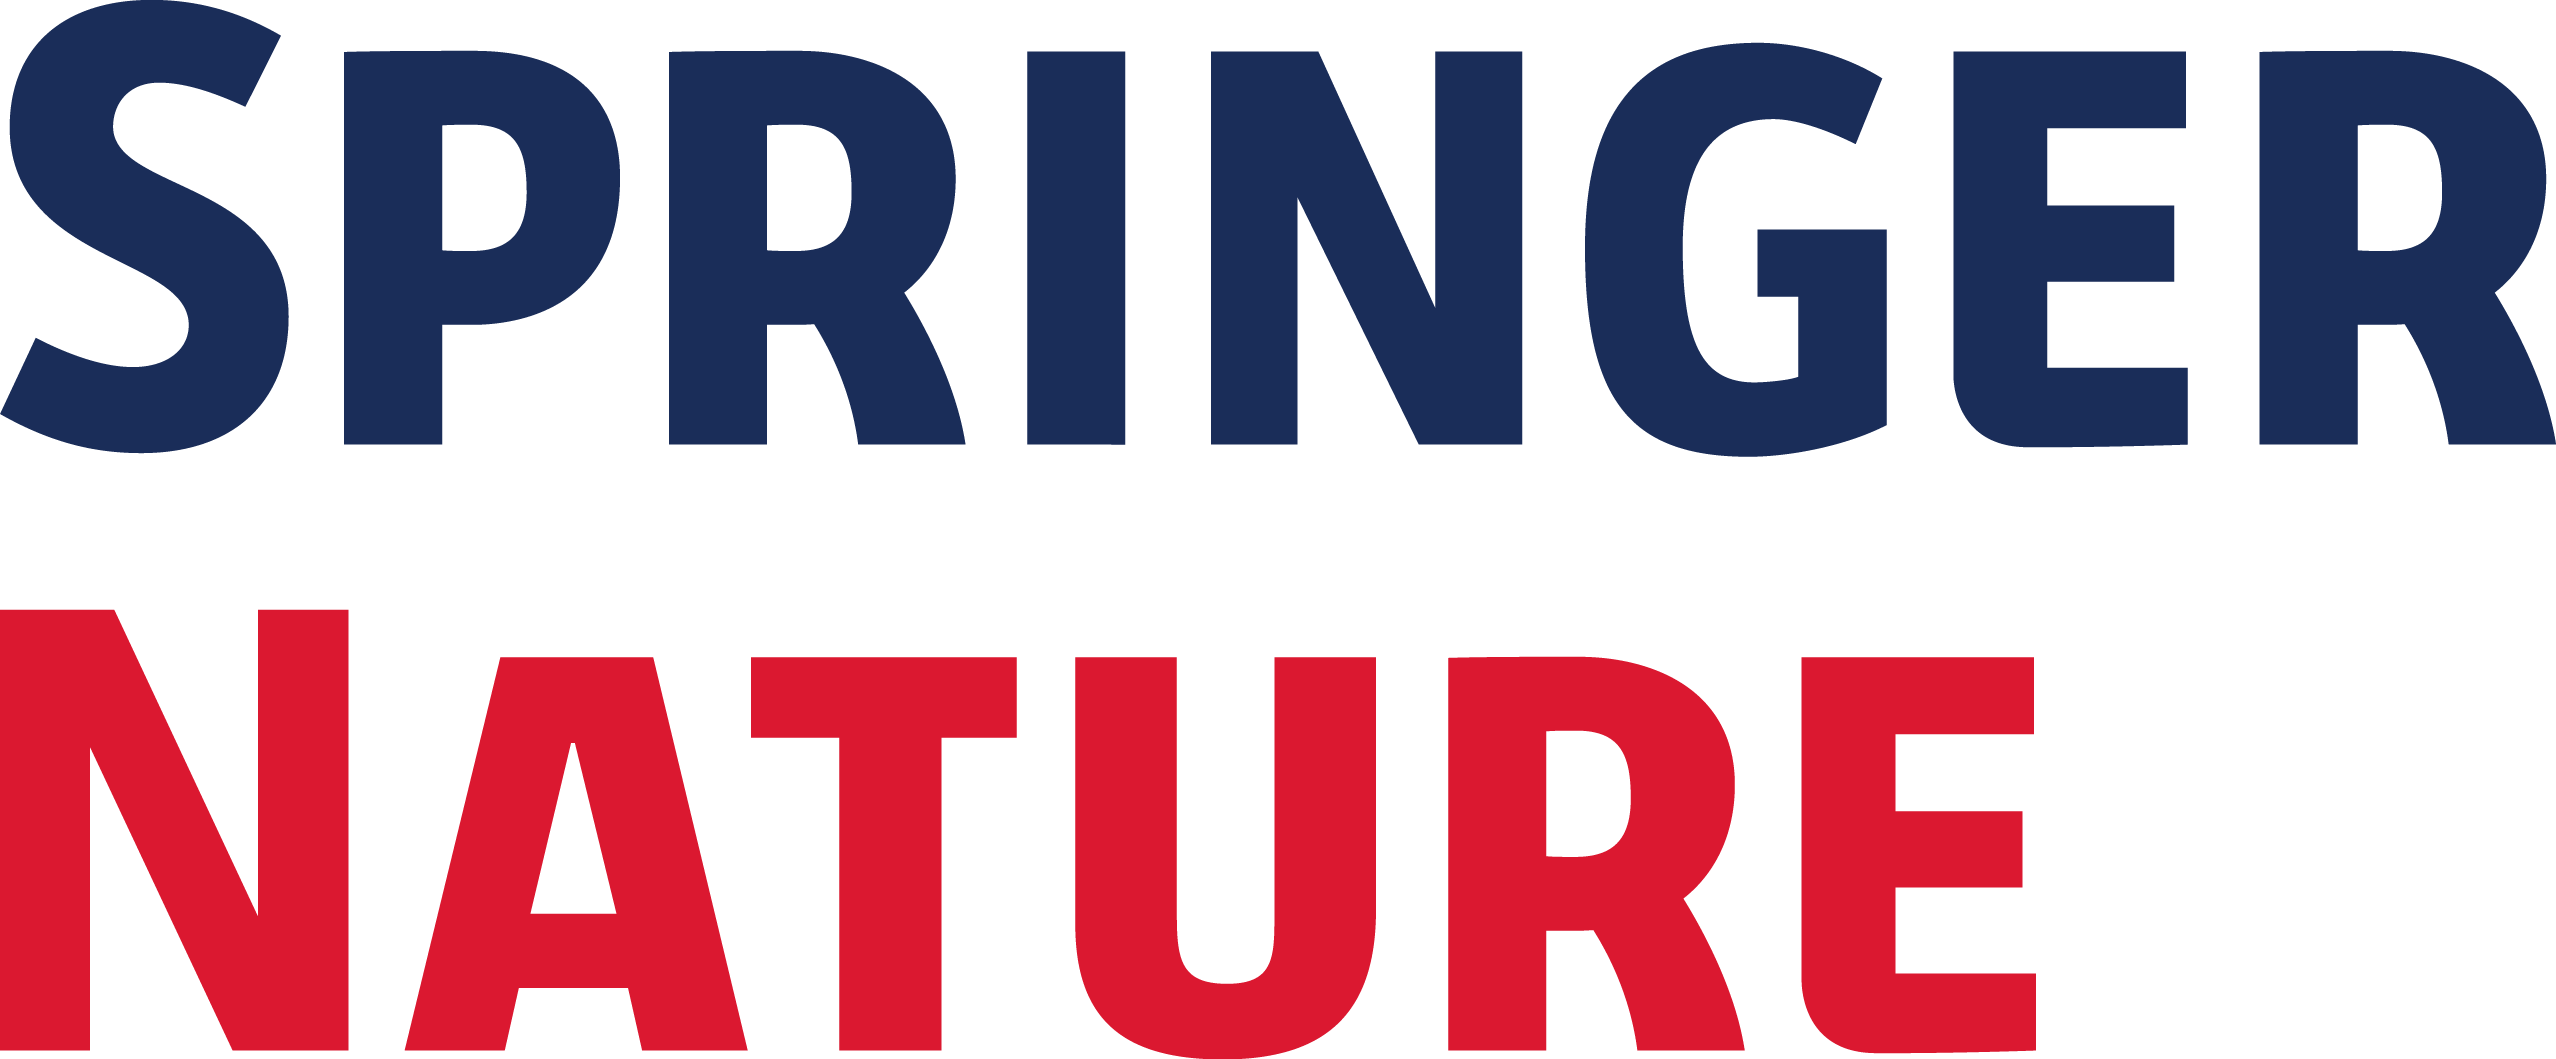 Springer Nature Ltd logo